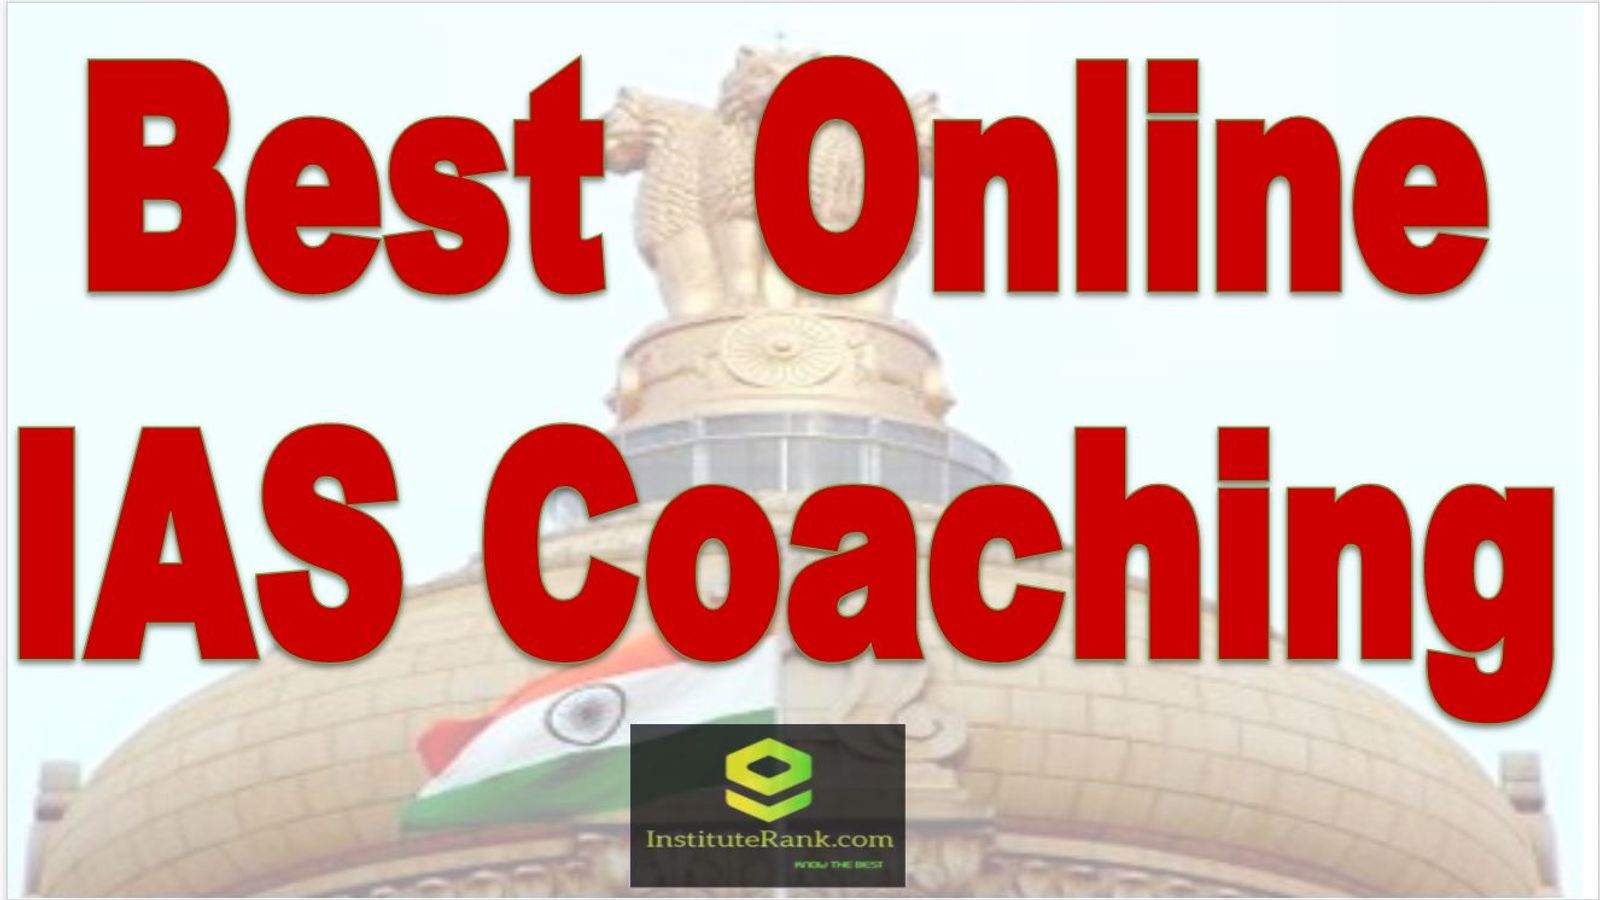 Top Online IAS Coaching